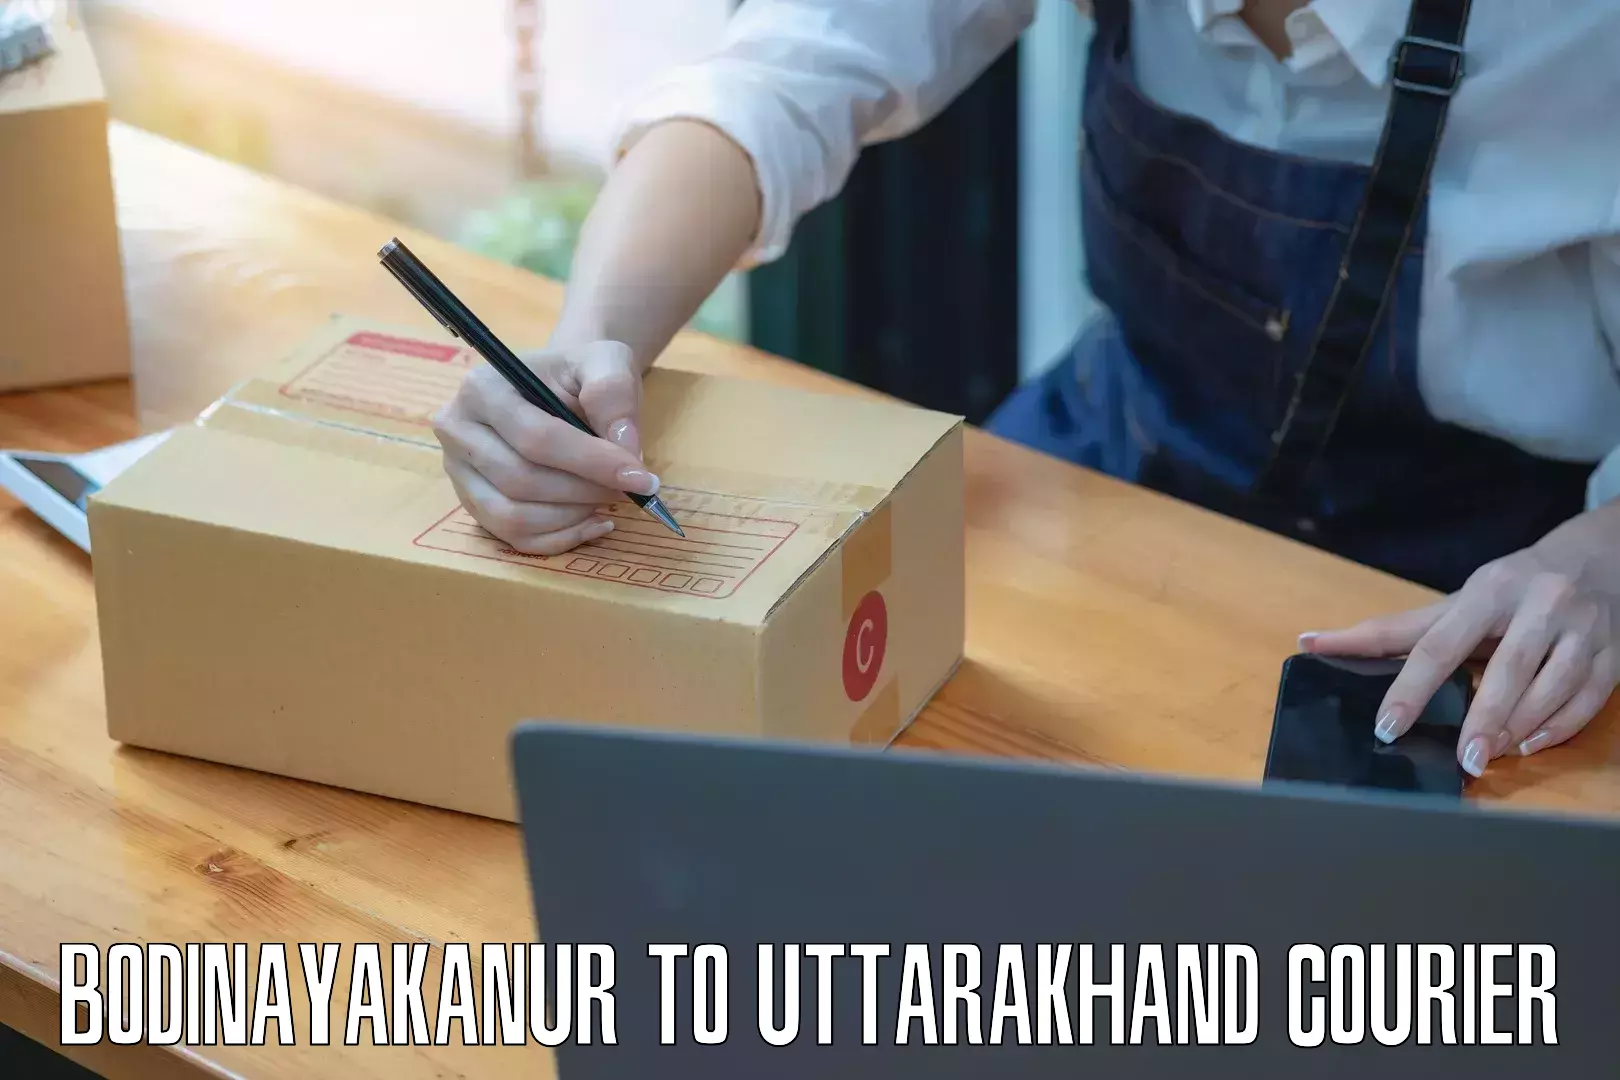 Nationwide shipping coverage Bodinayakanur to Uttarakhand